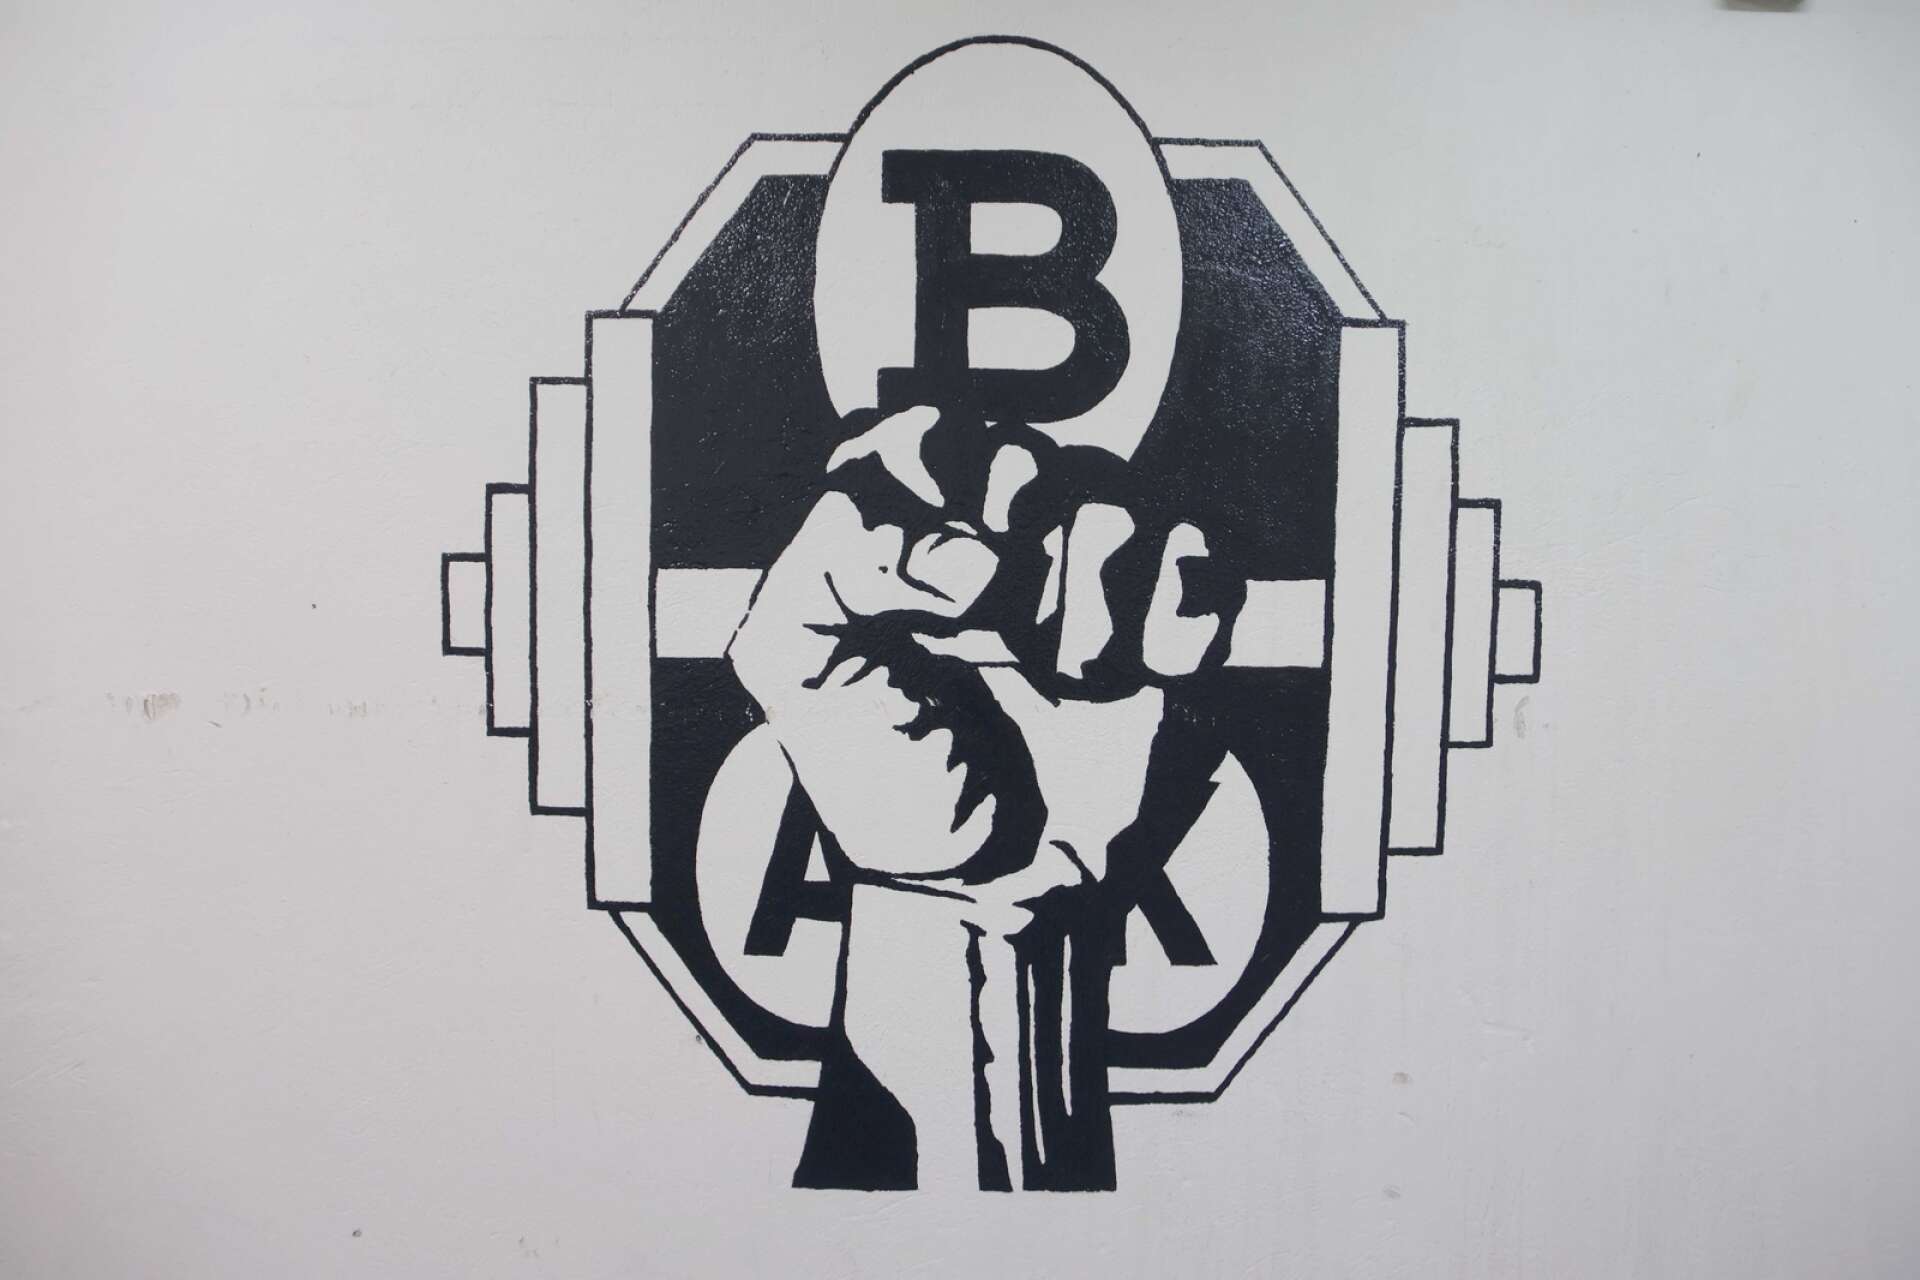 Bäckefors Atletklubbs logga är skapad av Kristoffer Ling-Johansson och finns målad på väggen i källarvalvet.